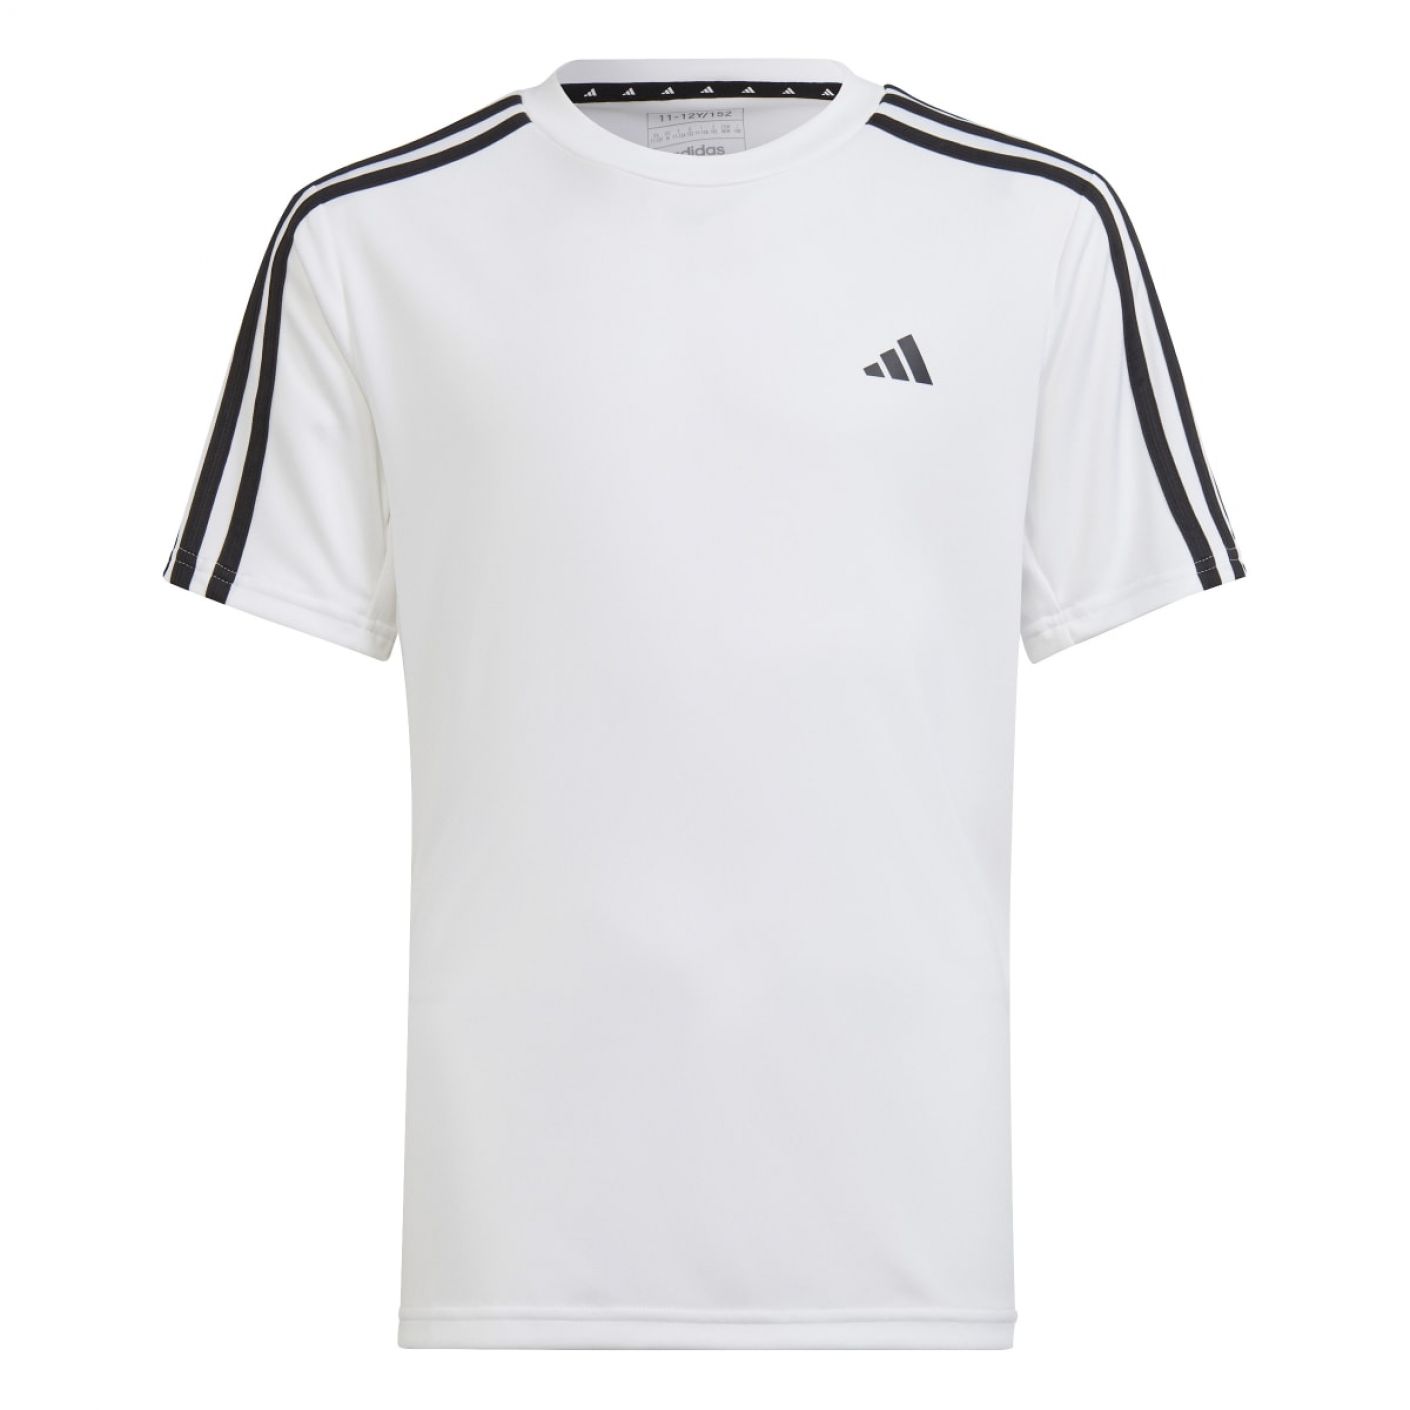 Adidas T-Shirts 3Stripes Junior White/Black